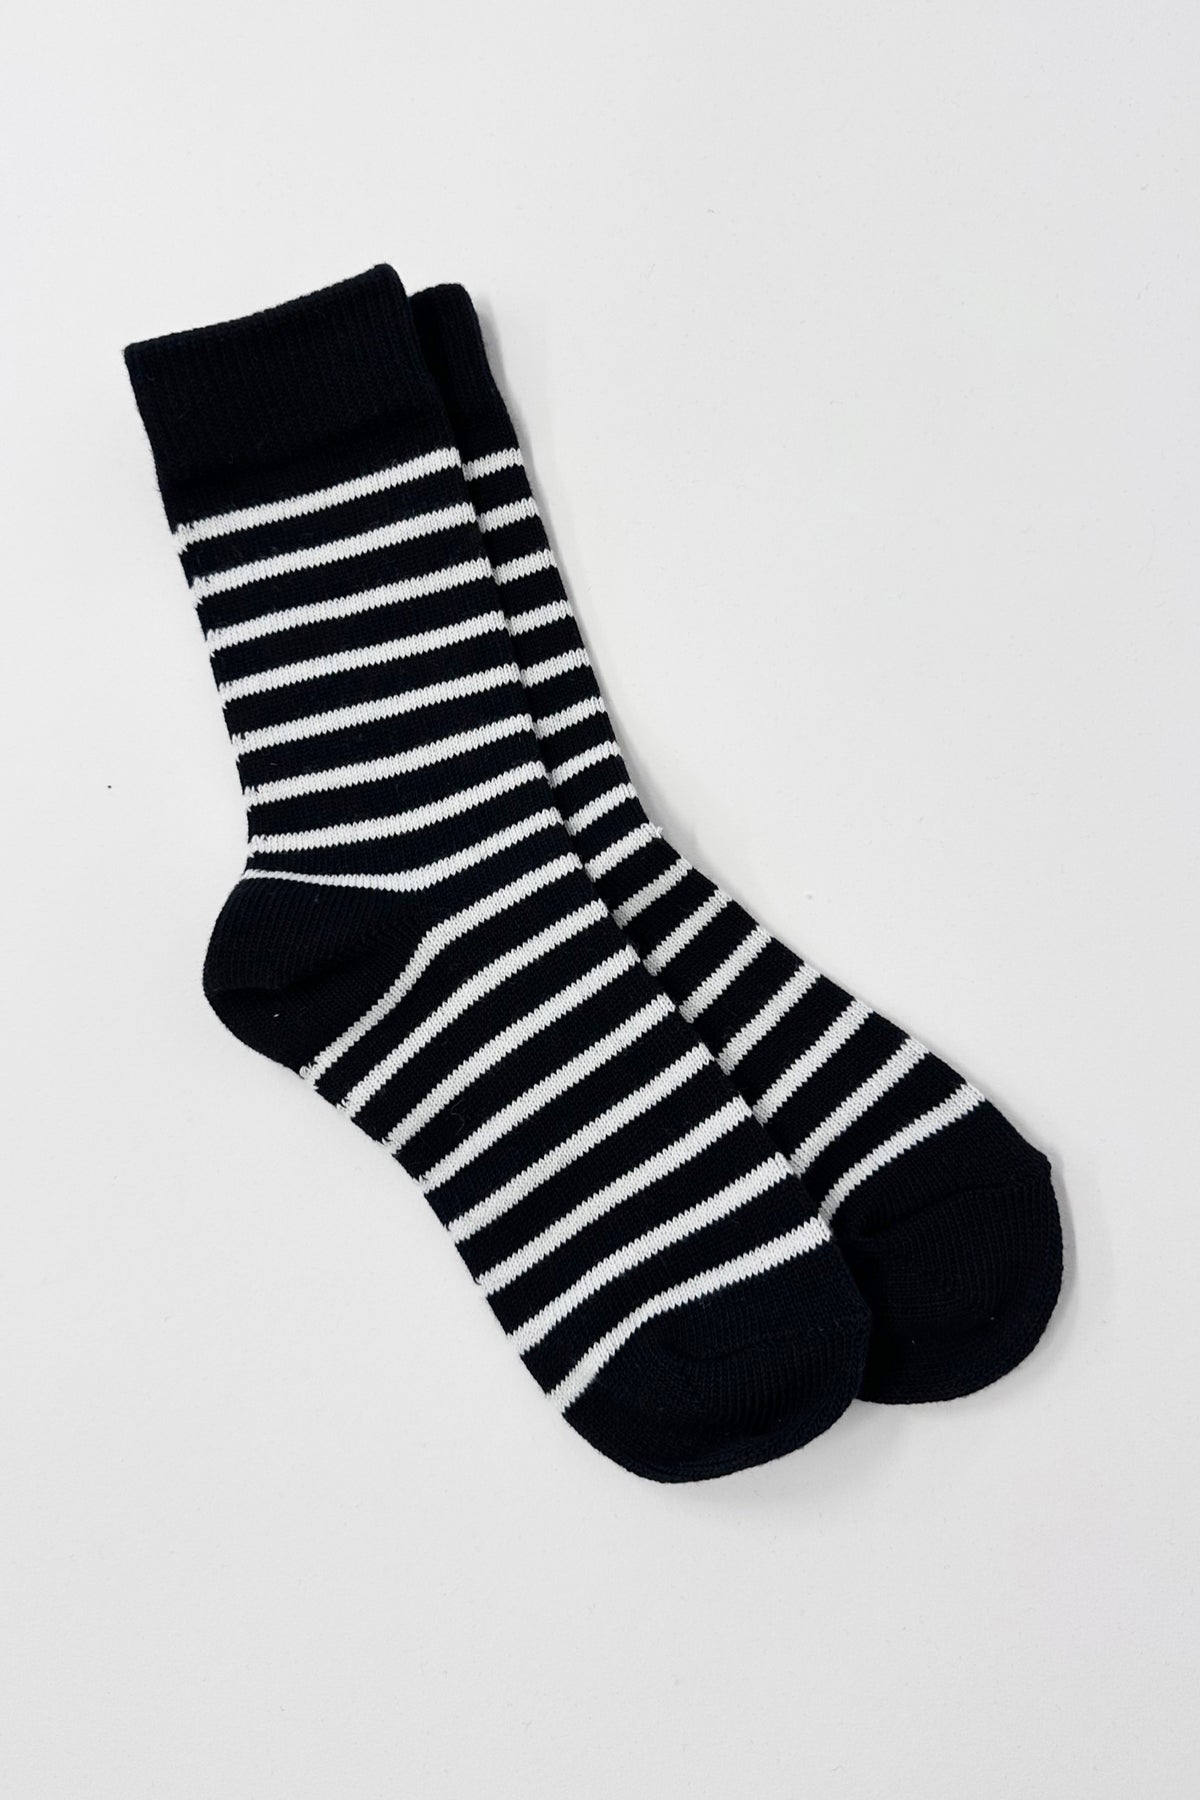 Black With White Stripe Socks